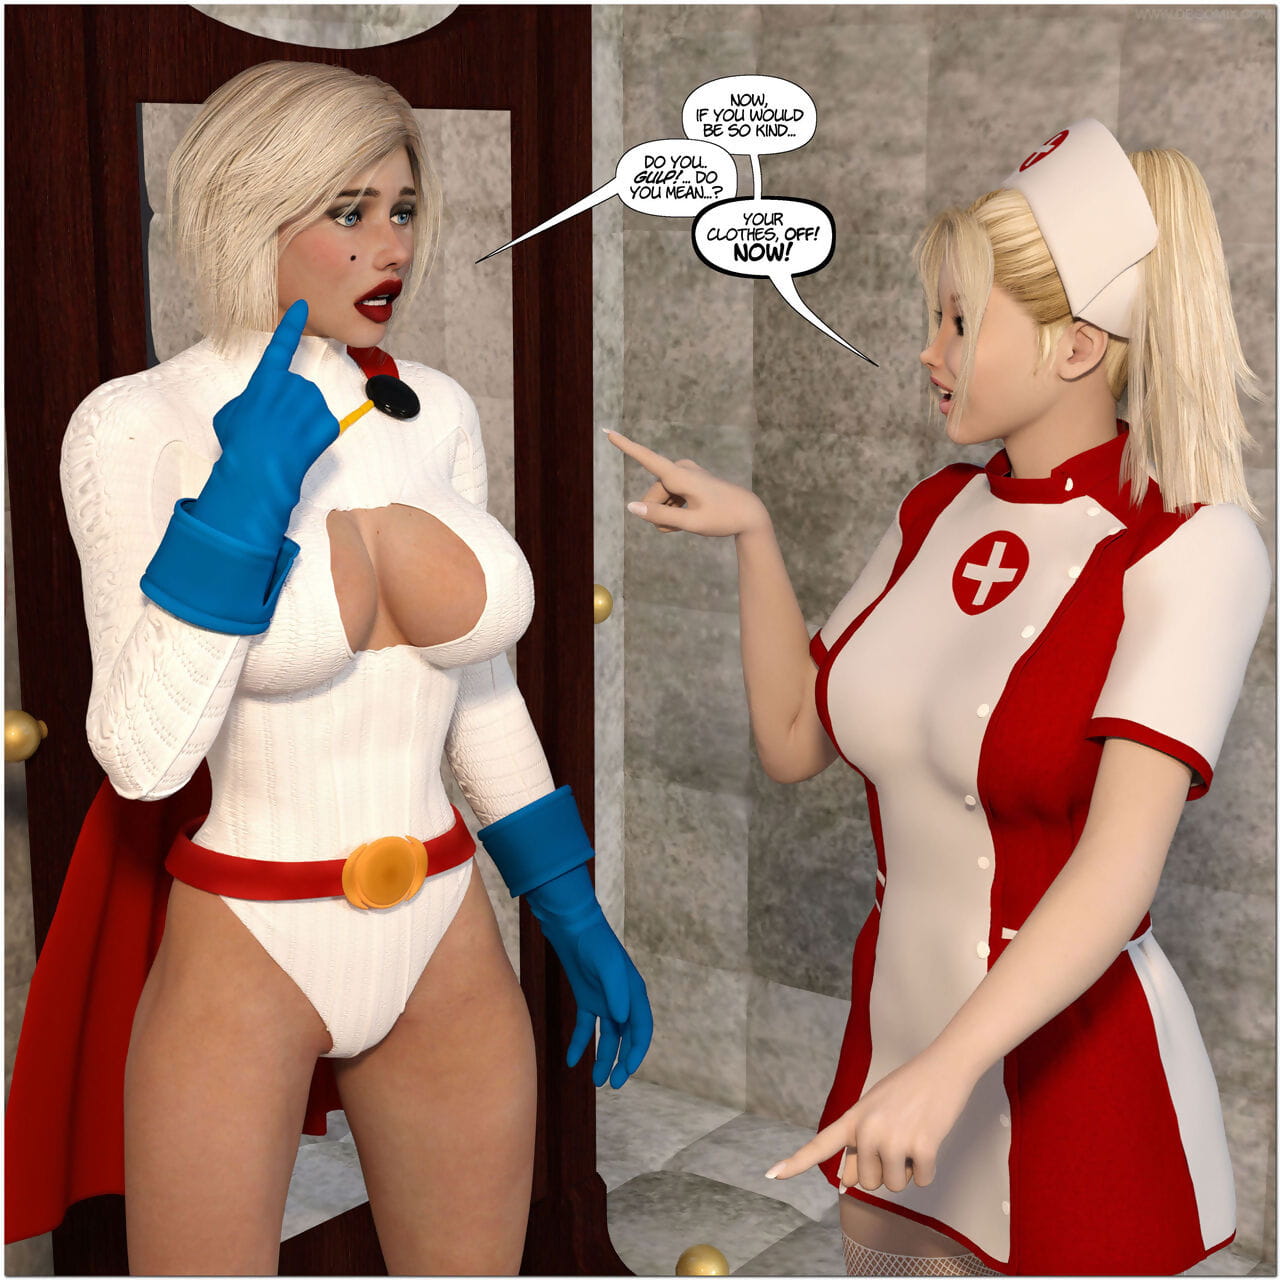 新しい アーカム のための superheroines 1 2nd 版 屈辱 - 劣化 の 電源 女の子 page 1